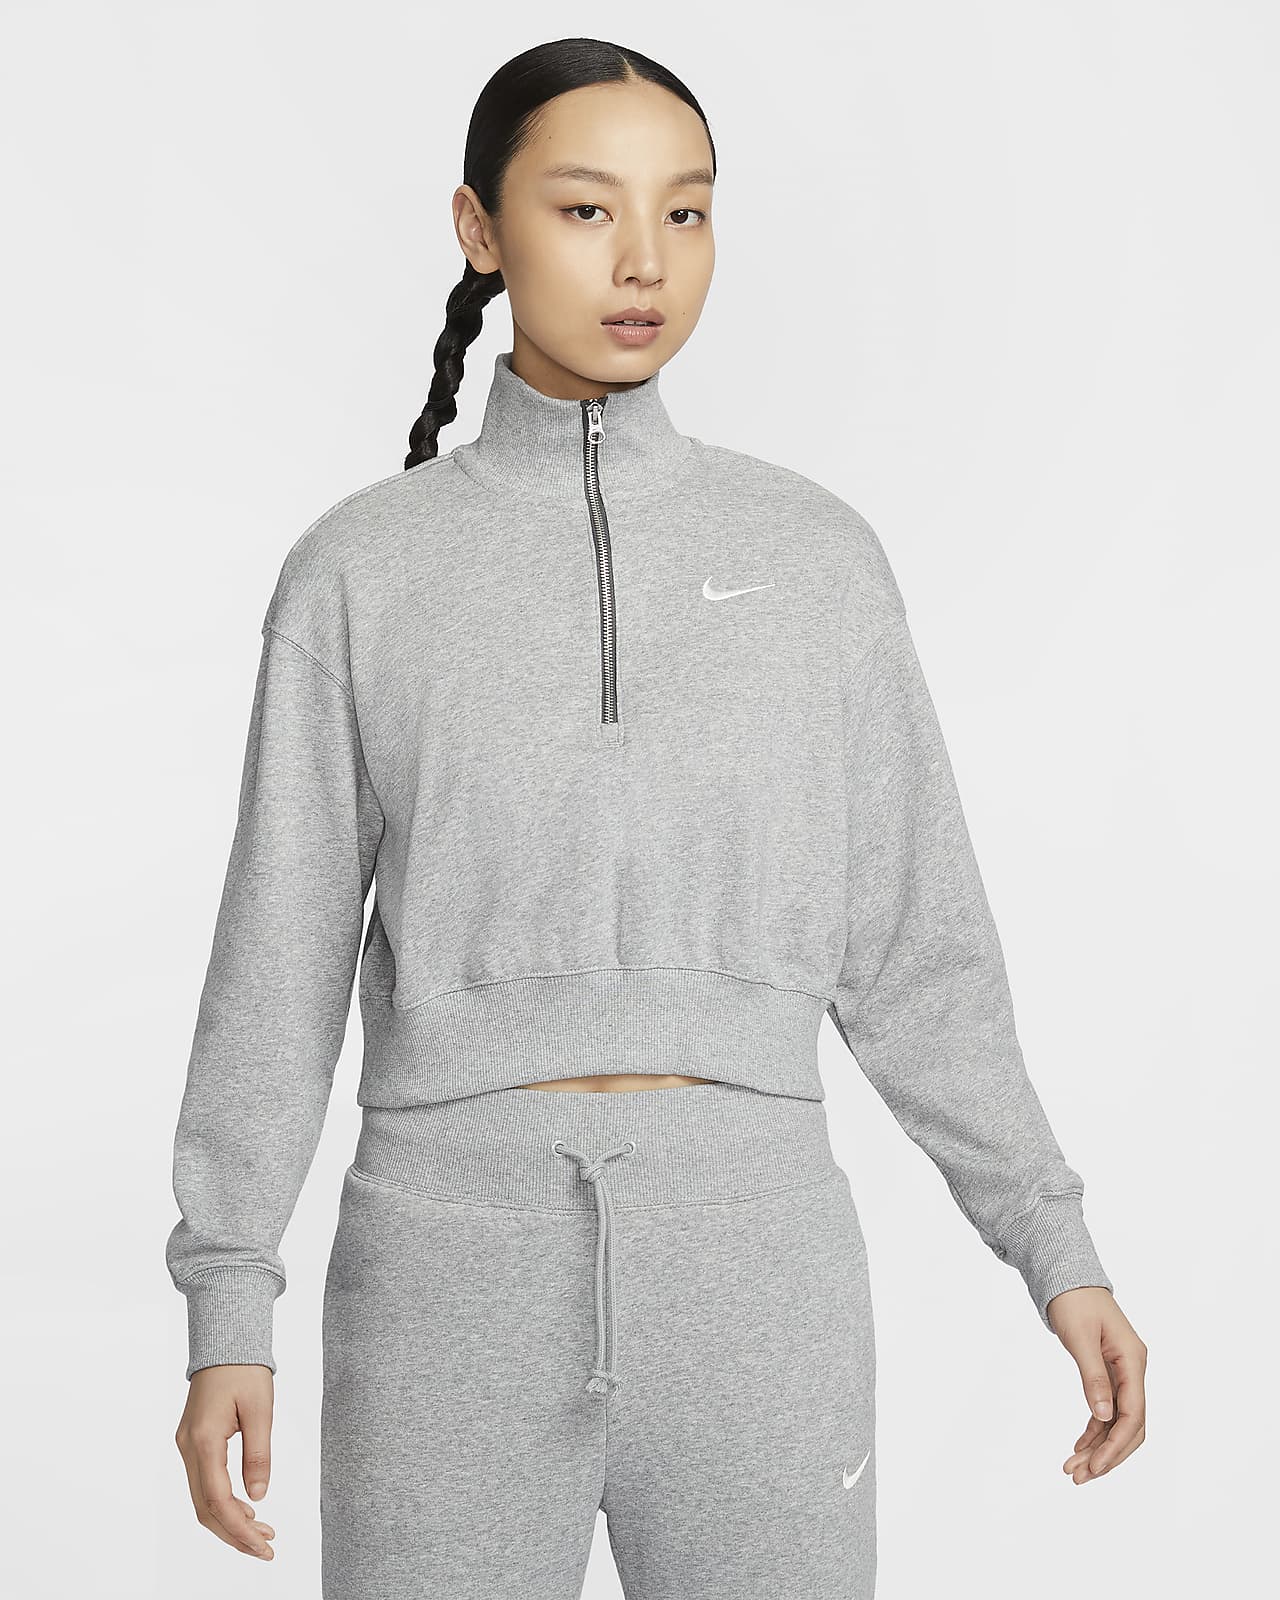 Nike Sportswear Phoenix Fleece Women's 1/4-Zip Cropped French Terry Sweatshirt